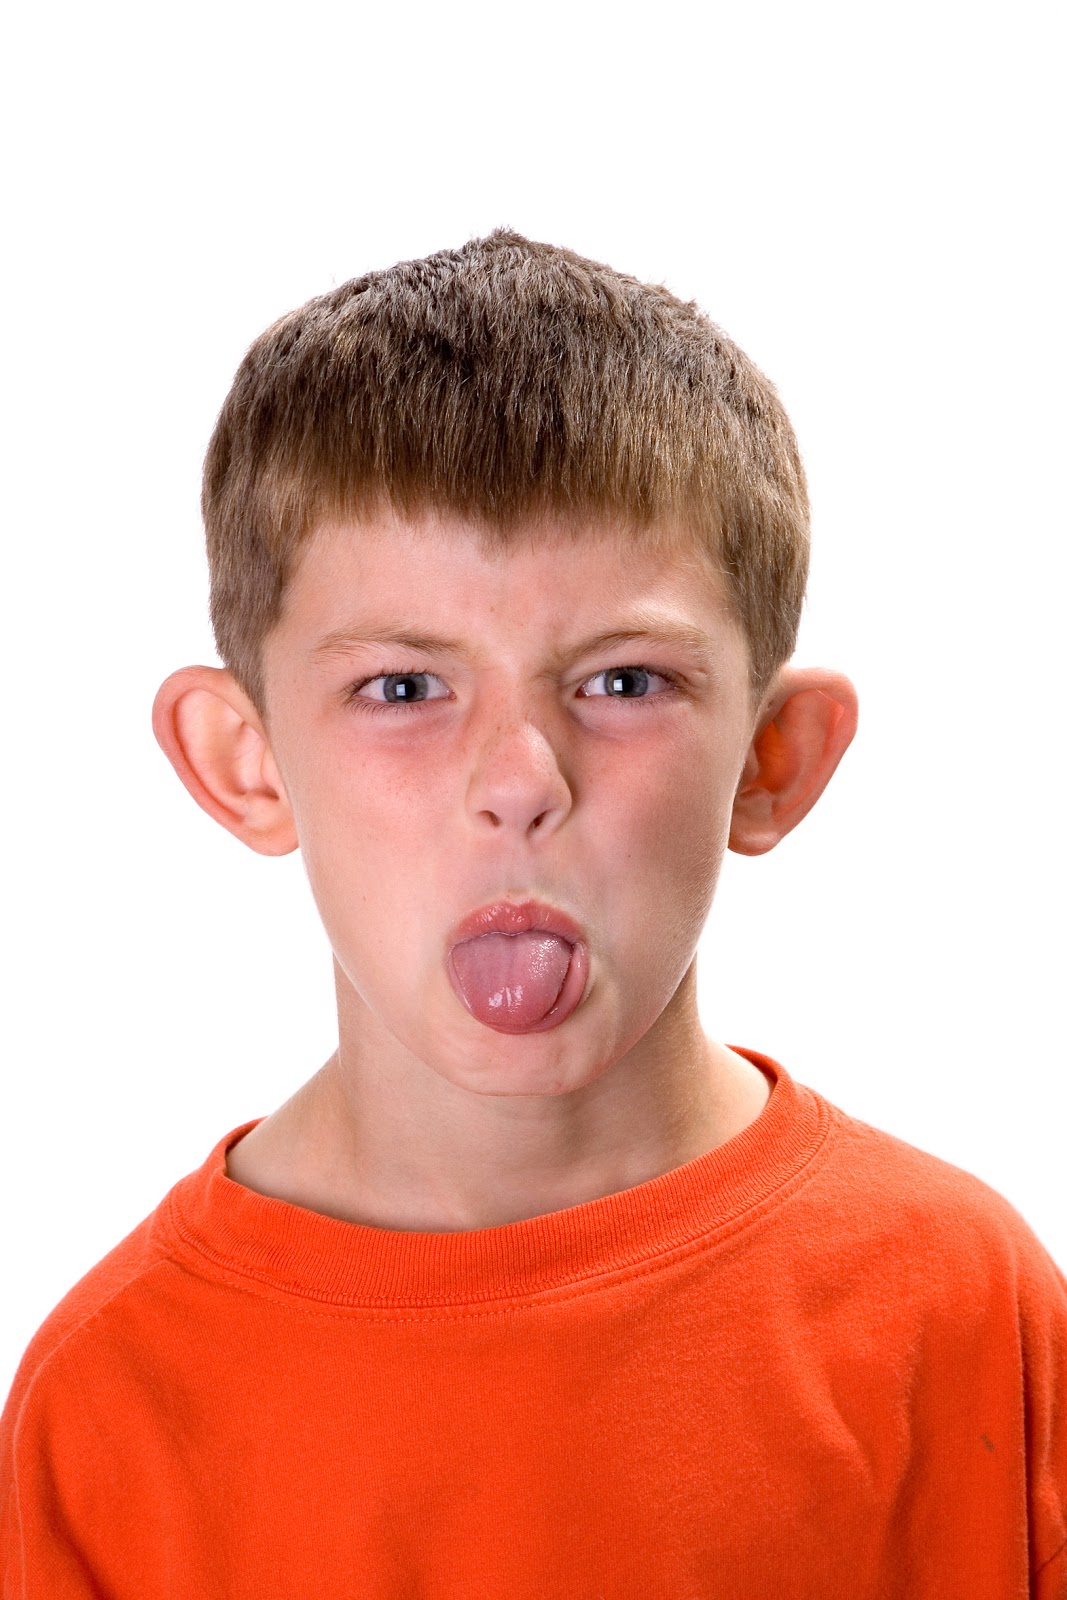 Child dick. Мальчик высунул язык. Рот мальчика взрослого.